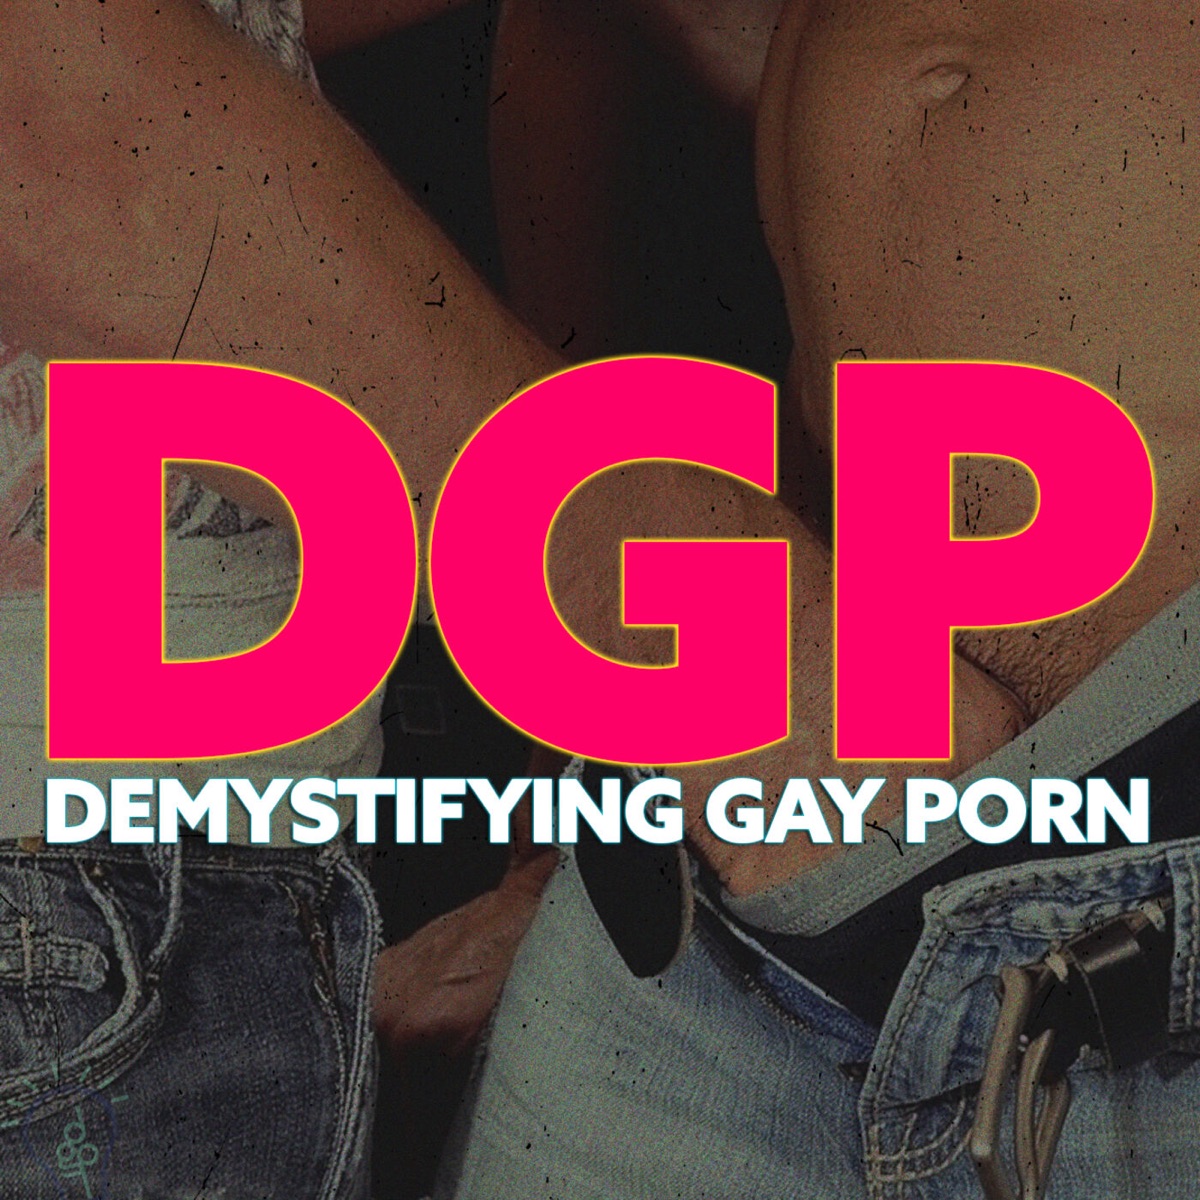 Xxx Video Dgp Believe - Demystifying Gay Porn â€“ Podcast â€“ Podtail